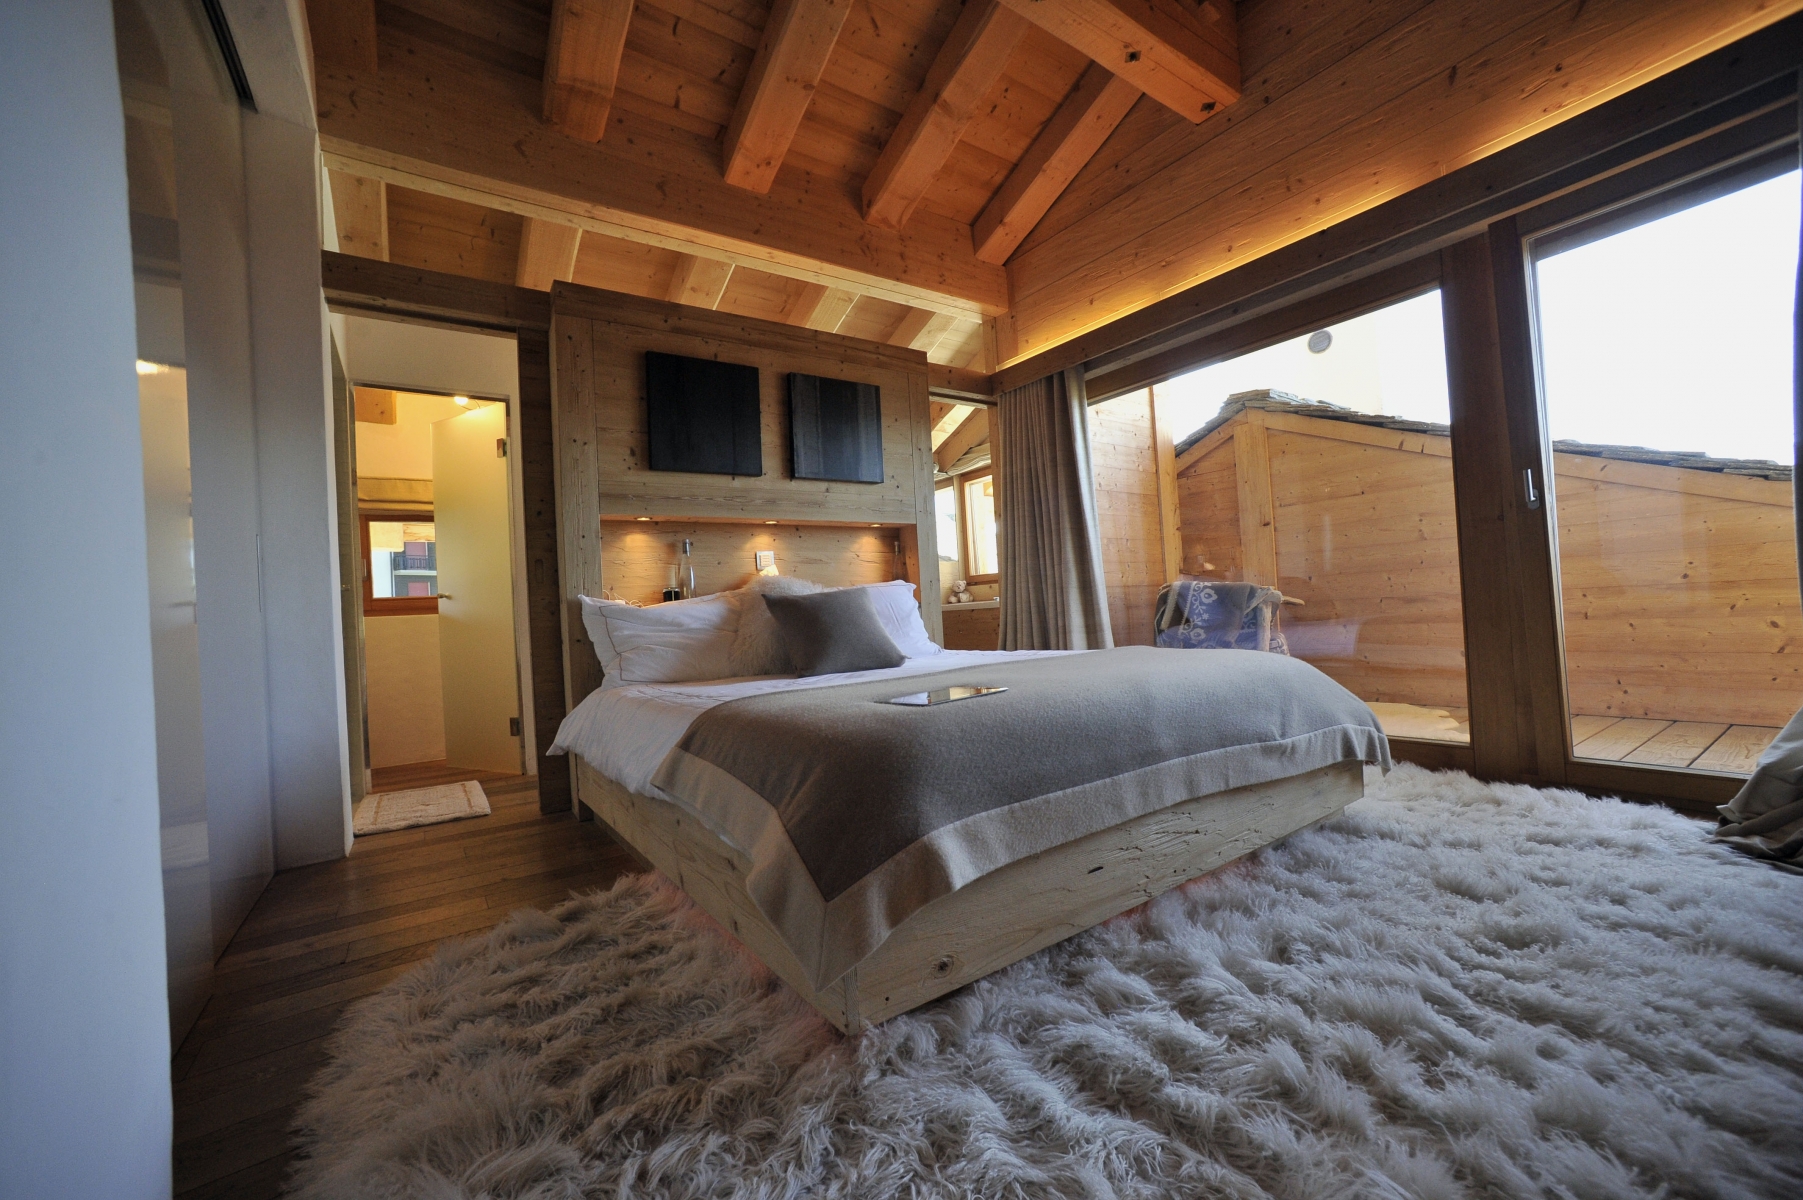 On trouve des appartements et chalets de toutes les gammes sur Airbnb en Valais. Du chalet grand luxe à Verbier pour 12000 francs la nuit au petit studio en plaine pour moins de 100 francs.